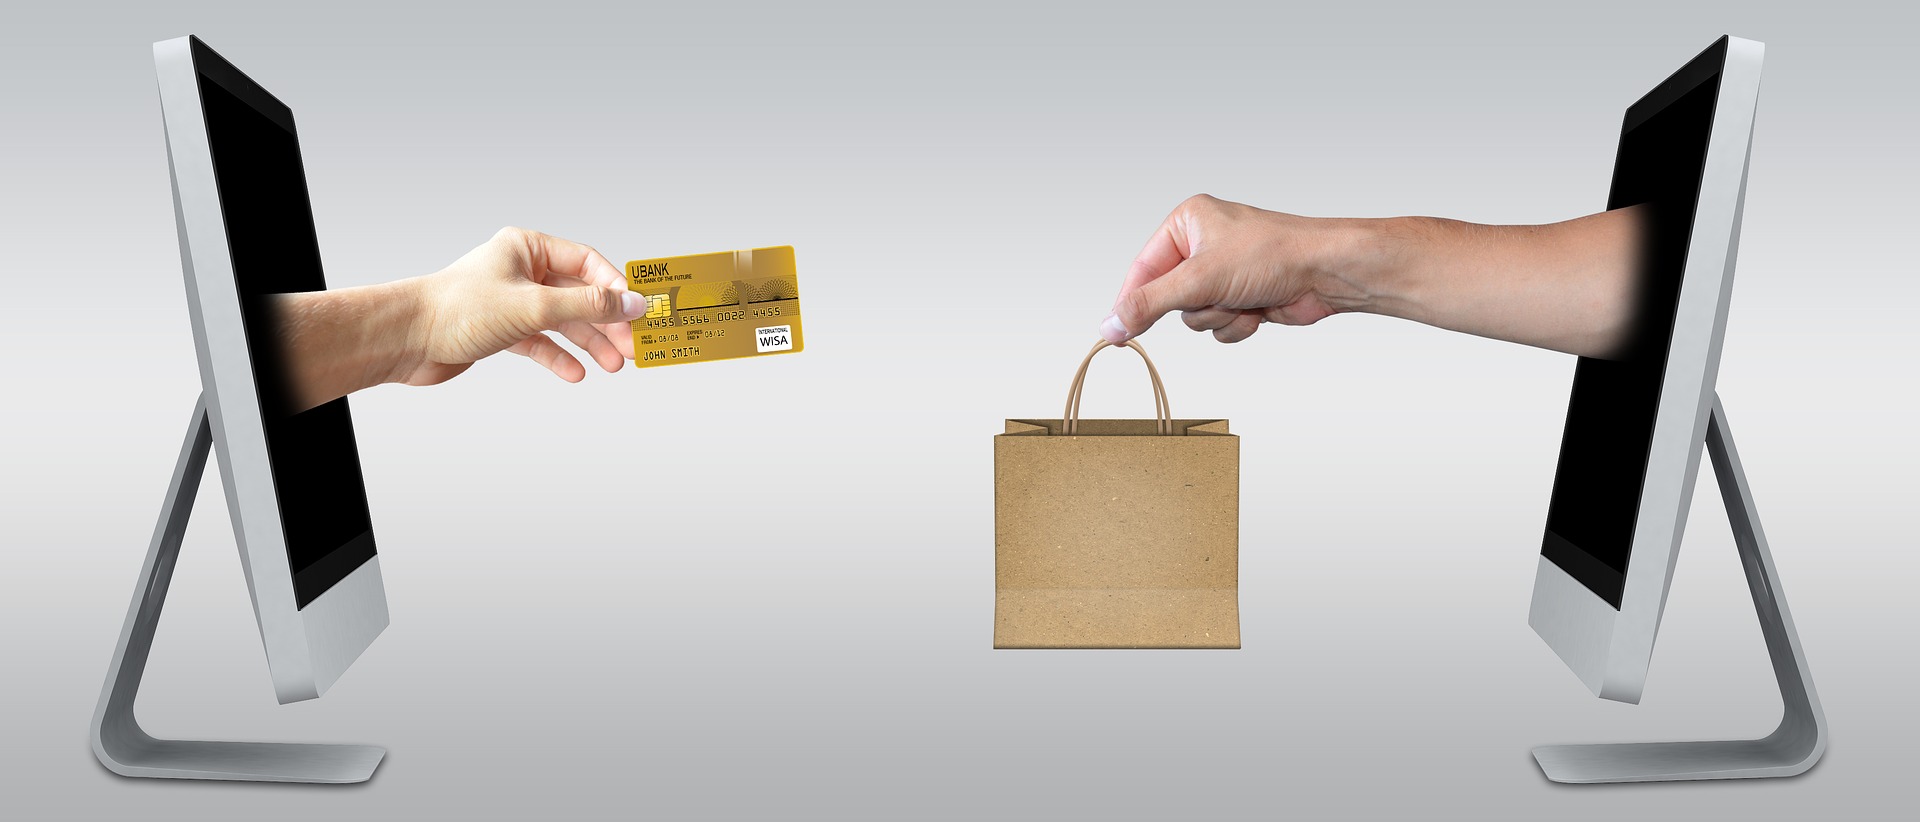 Por un lado, una mano saliendo de un monitor con una tarjeta de crédito y por el otro lado, una mano extendiendo una bolsa que simula tener mercancía.